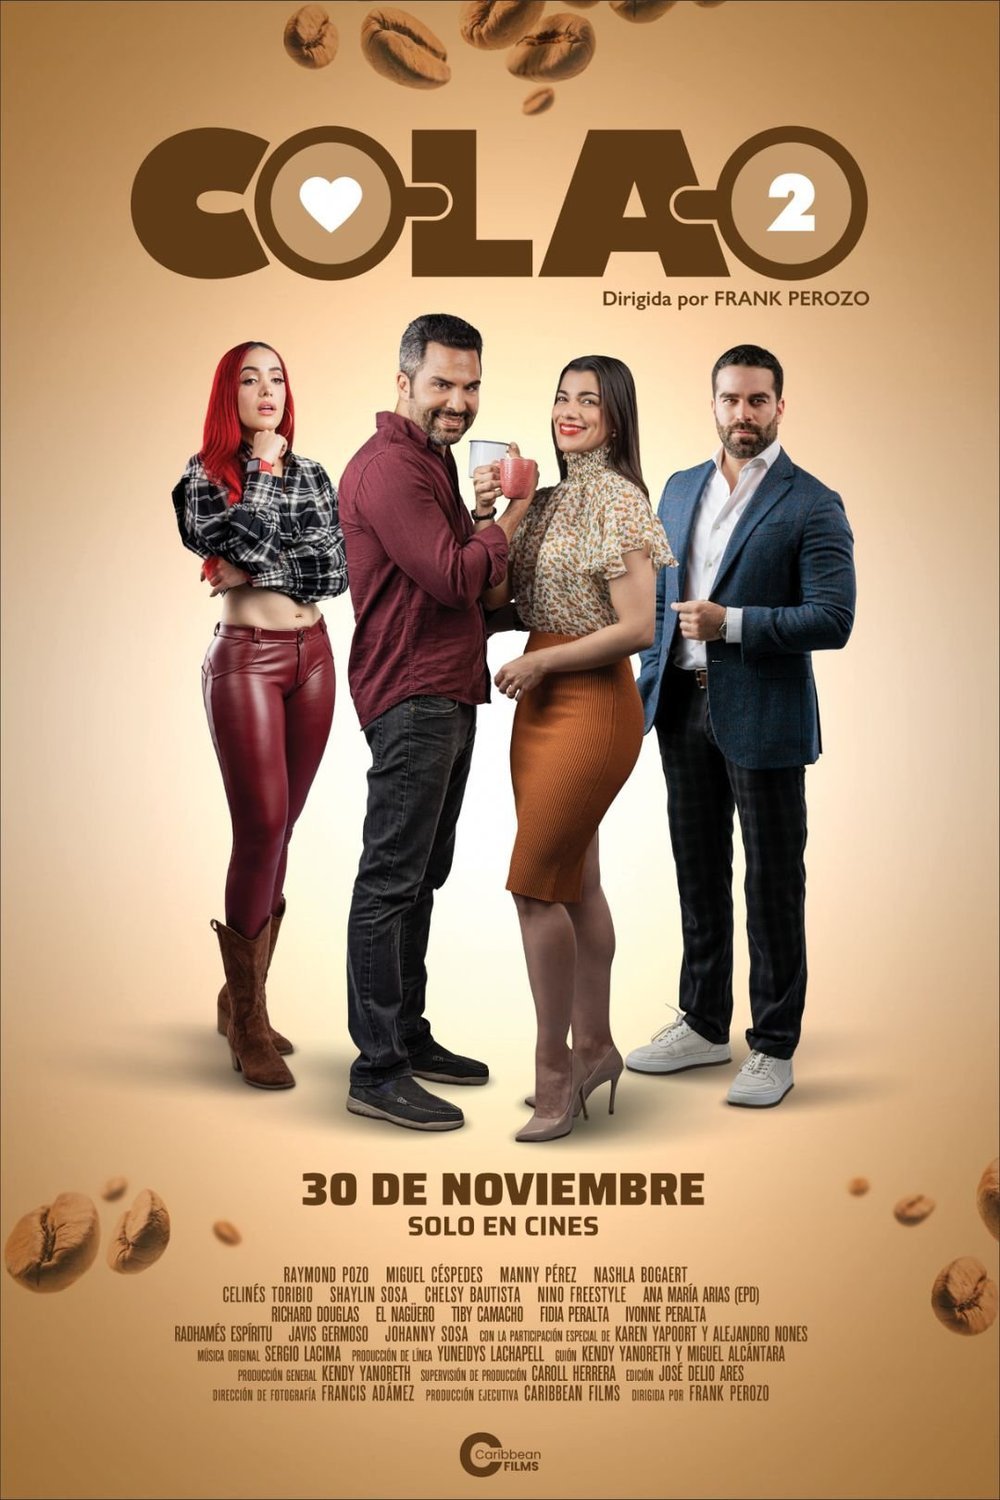 L'affiche originale du film Colao 2 en espagnol